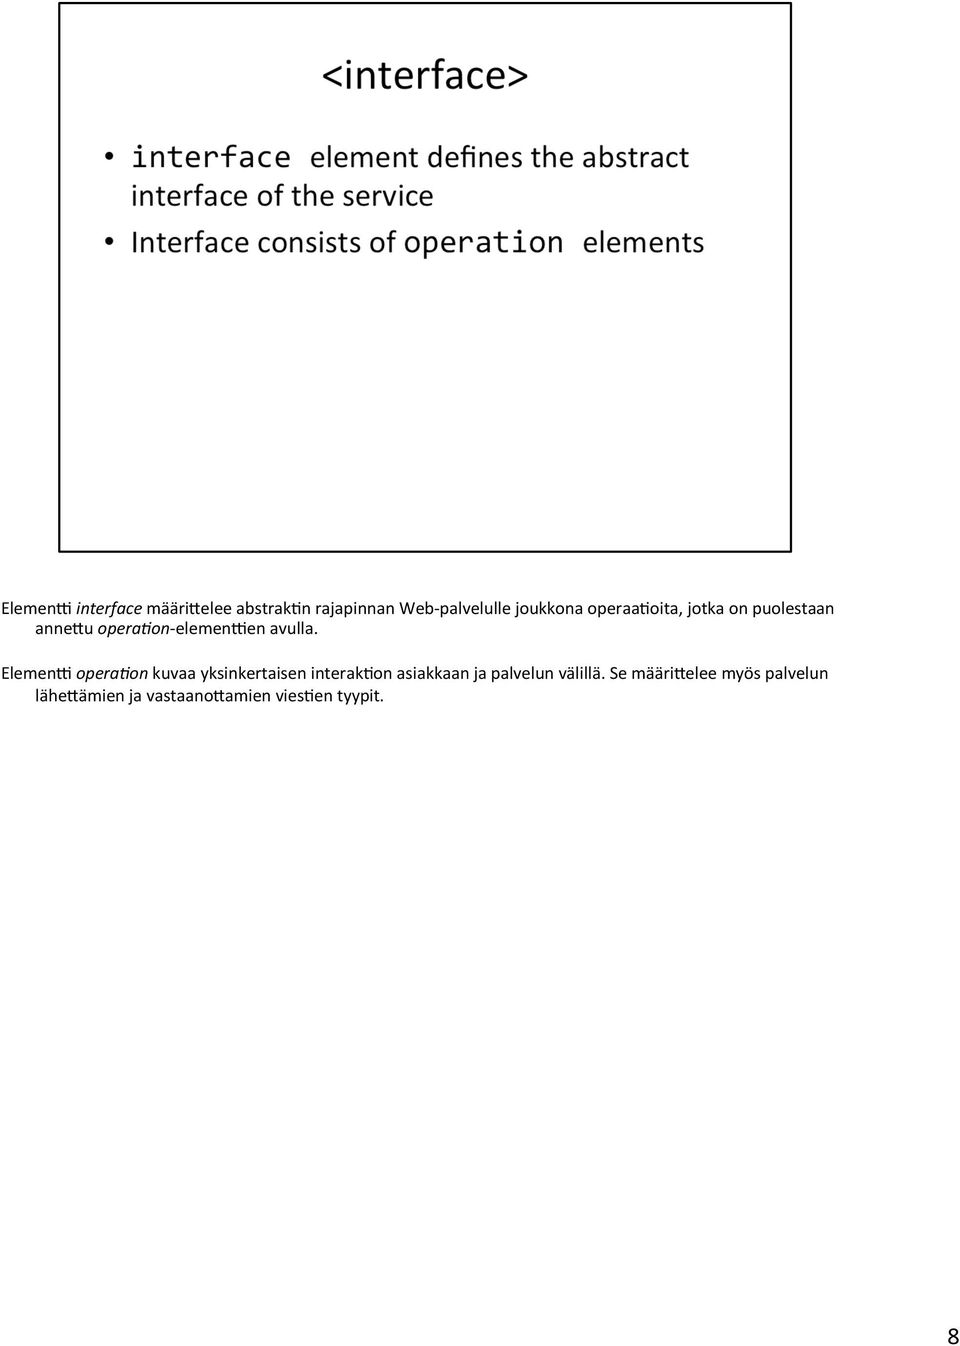 ElemenX opera0on kuvaa yksinkertaisen interak3on asiakkaan ja palvelun